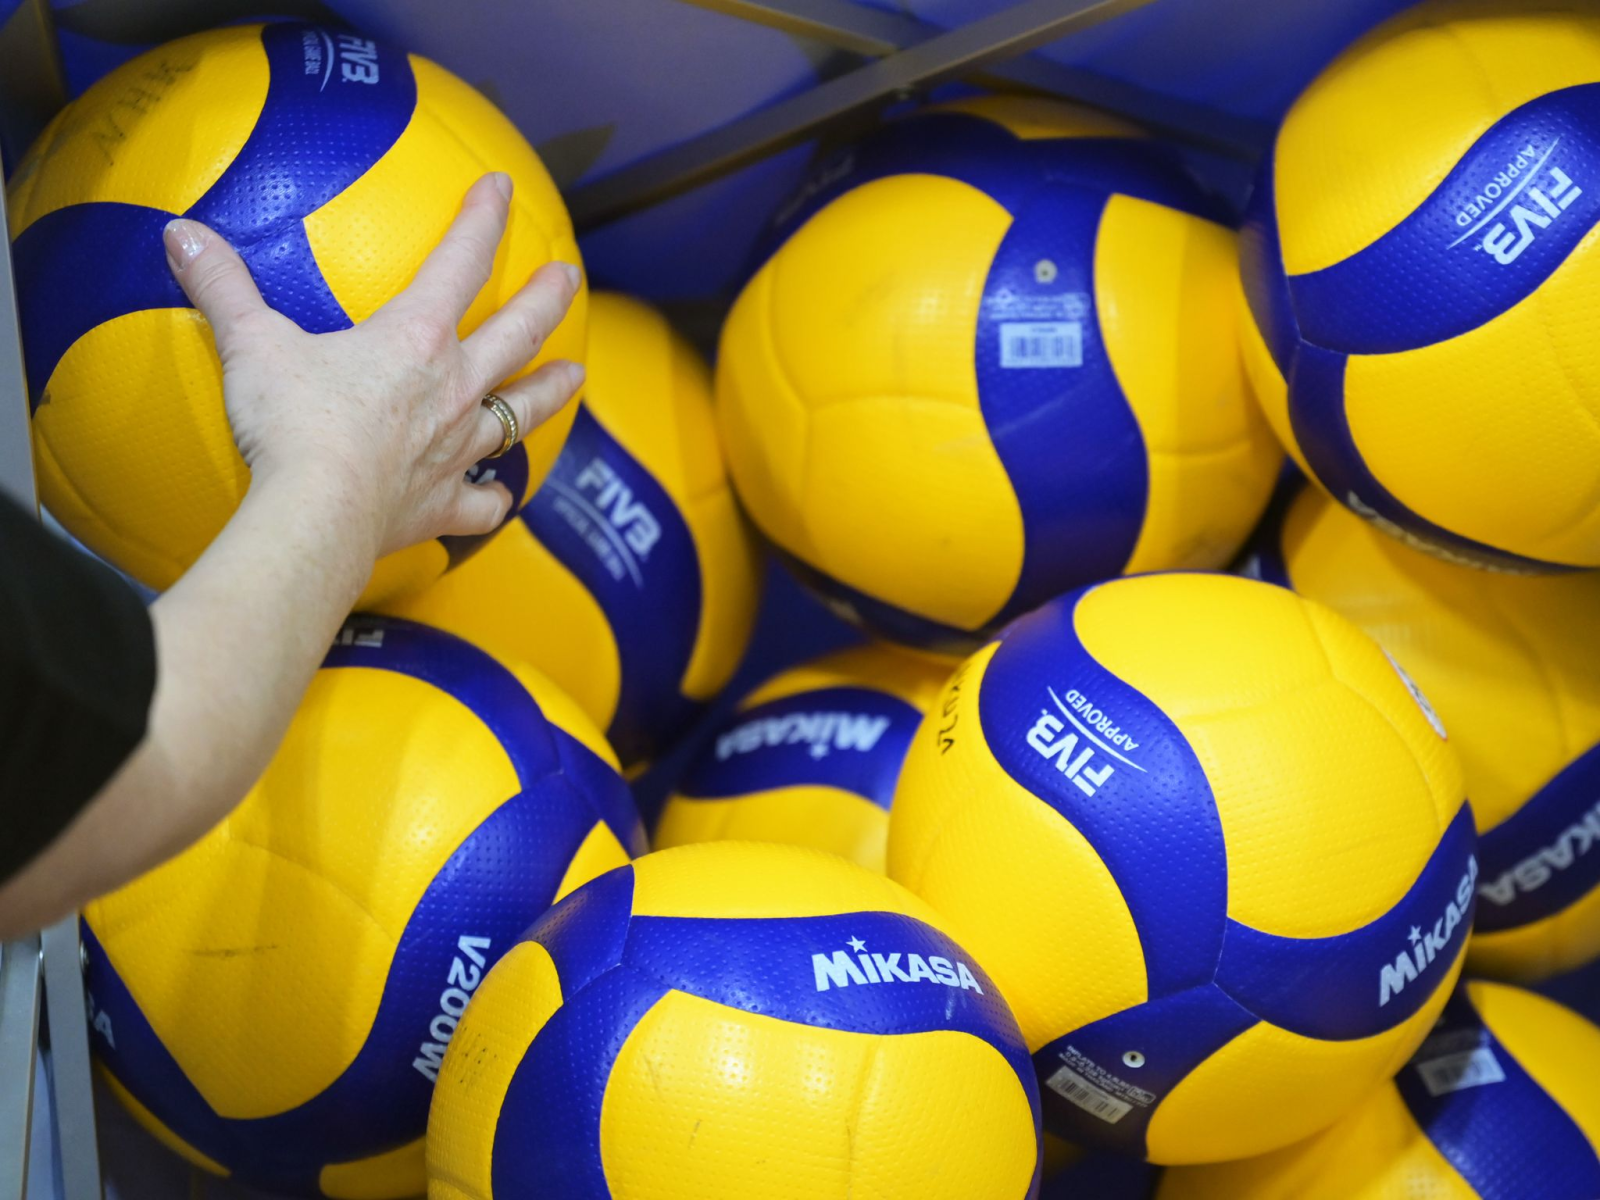 Volleyball-Spielbälle liegen auf einem Haufen.